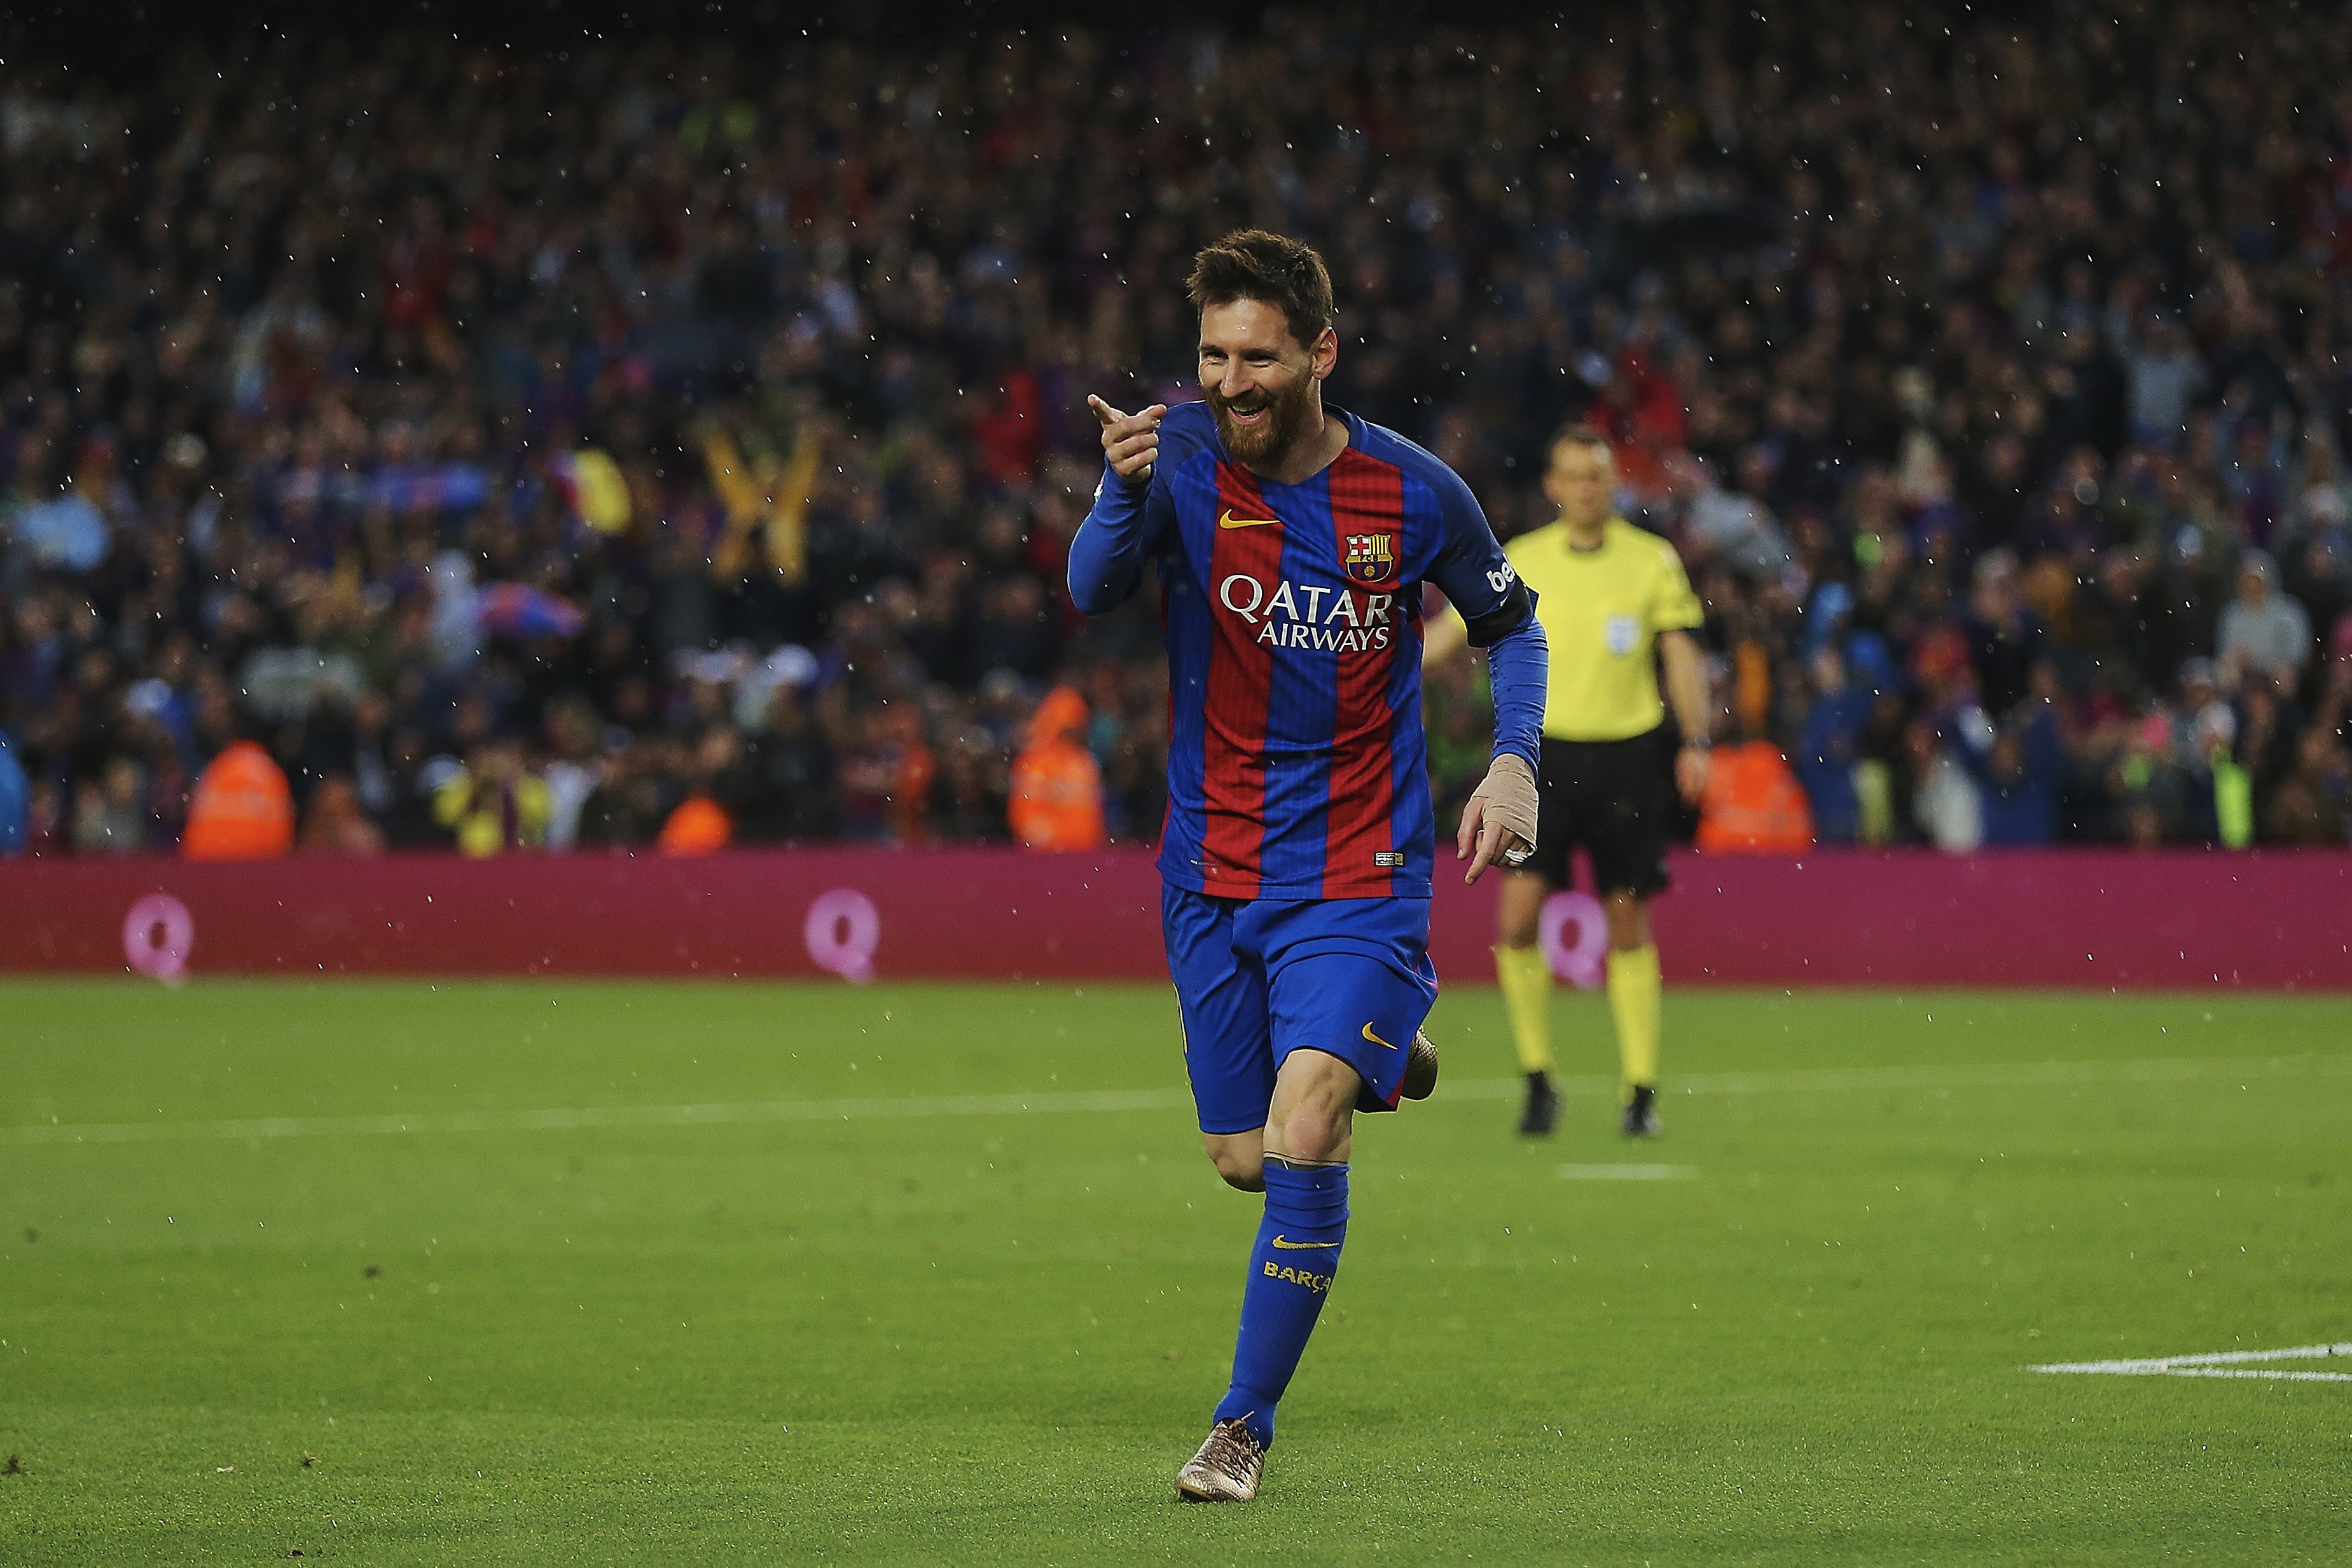 El Barça renova Leo Messi fins al 2021